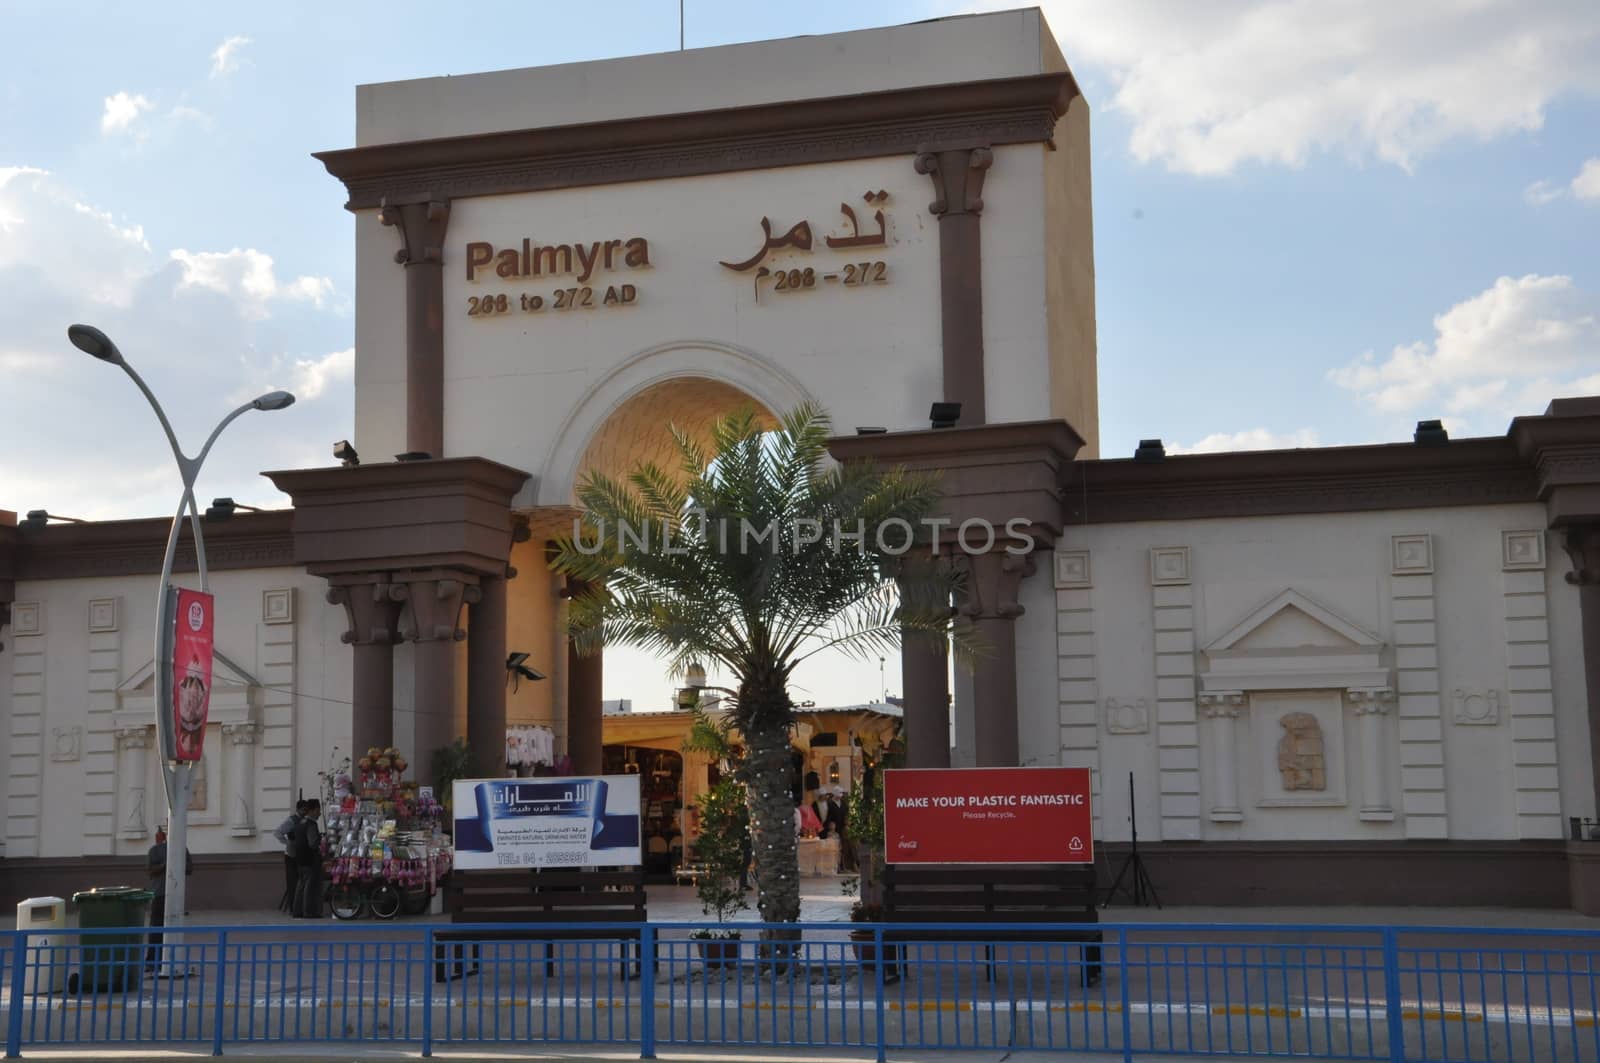 Palmyra pavilion at Global Village in Dubai, UAE by sainaniritu